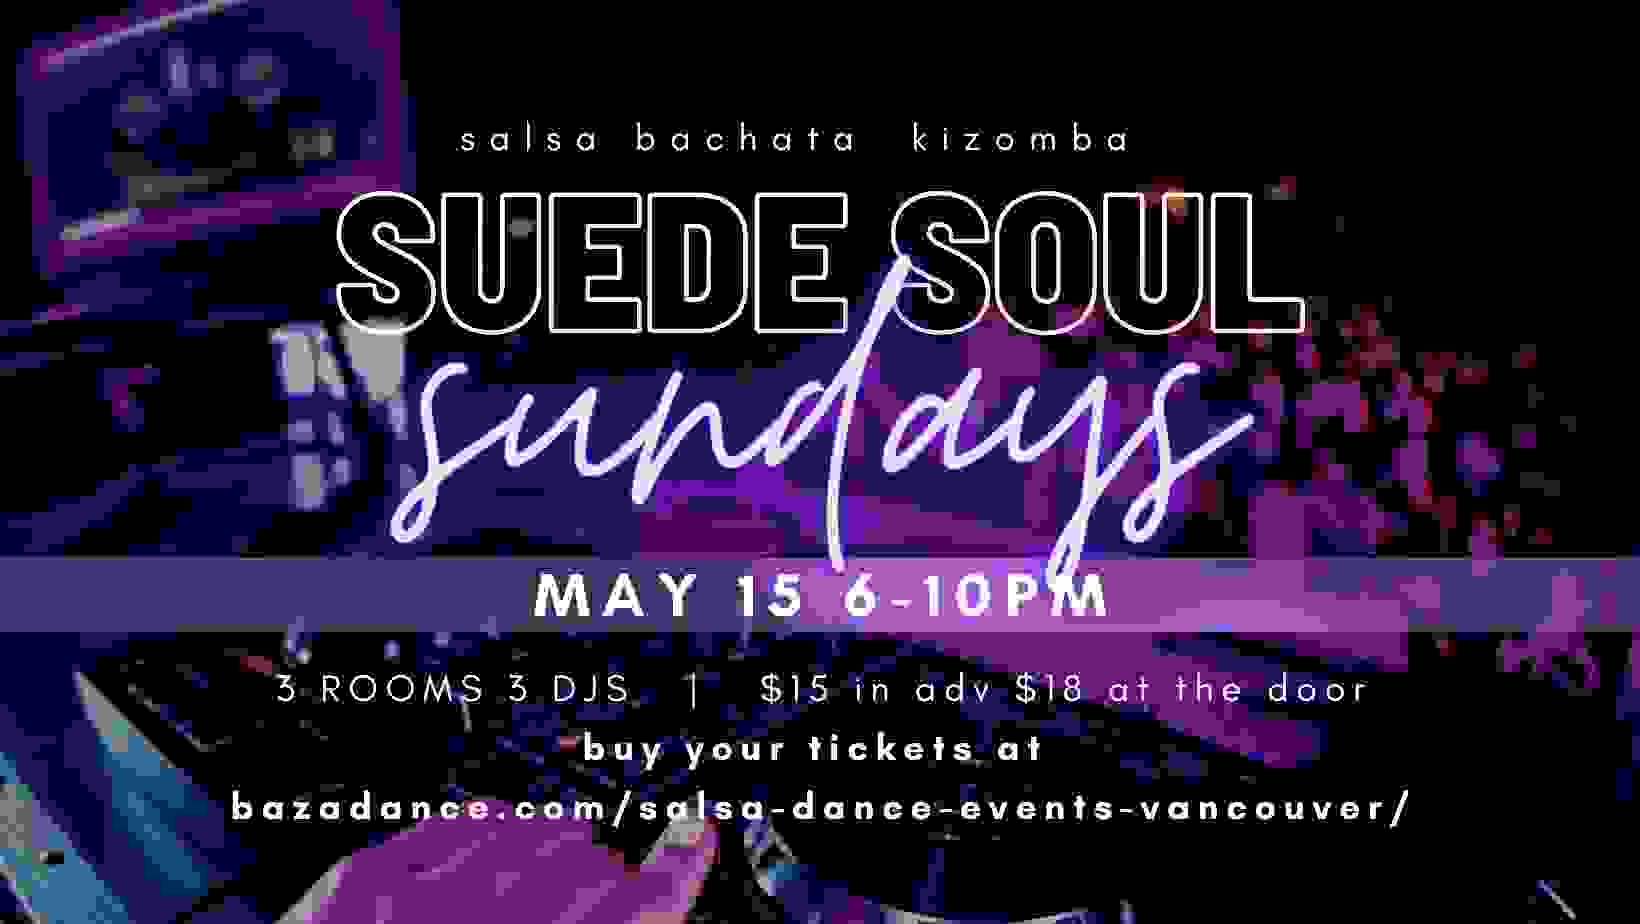 Copy of Suede Soul Sundays(2)